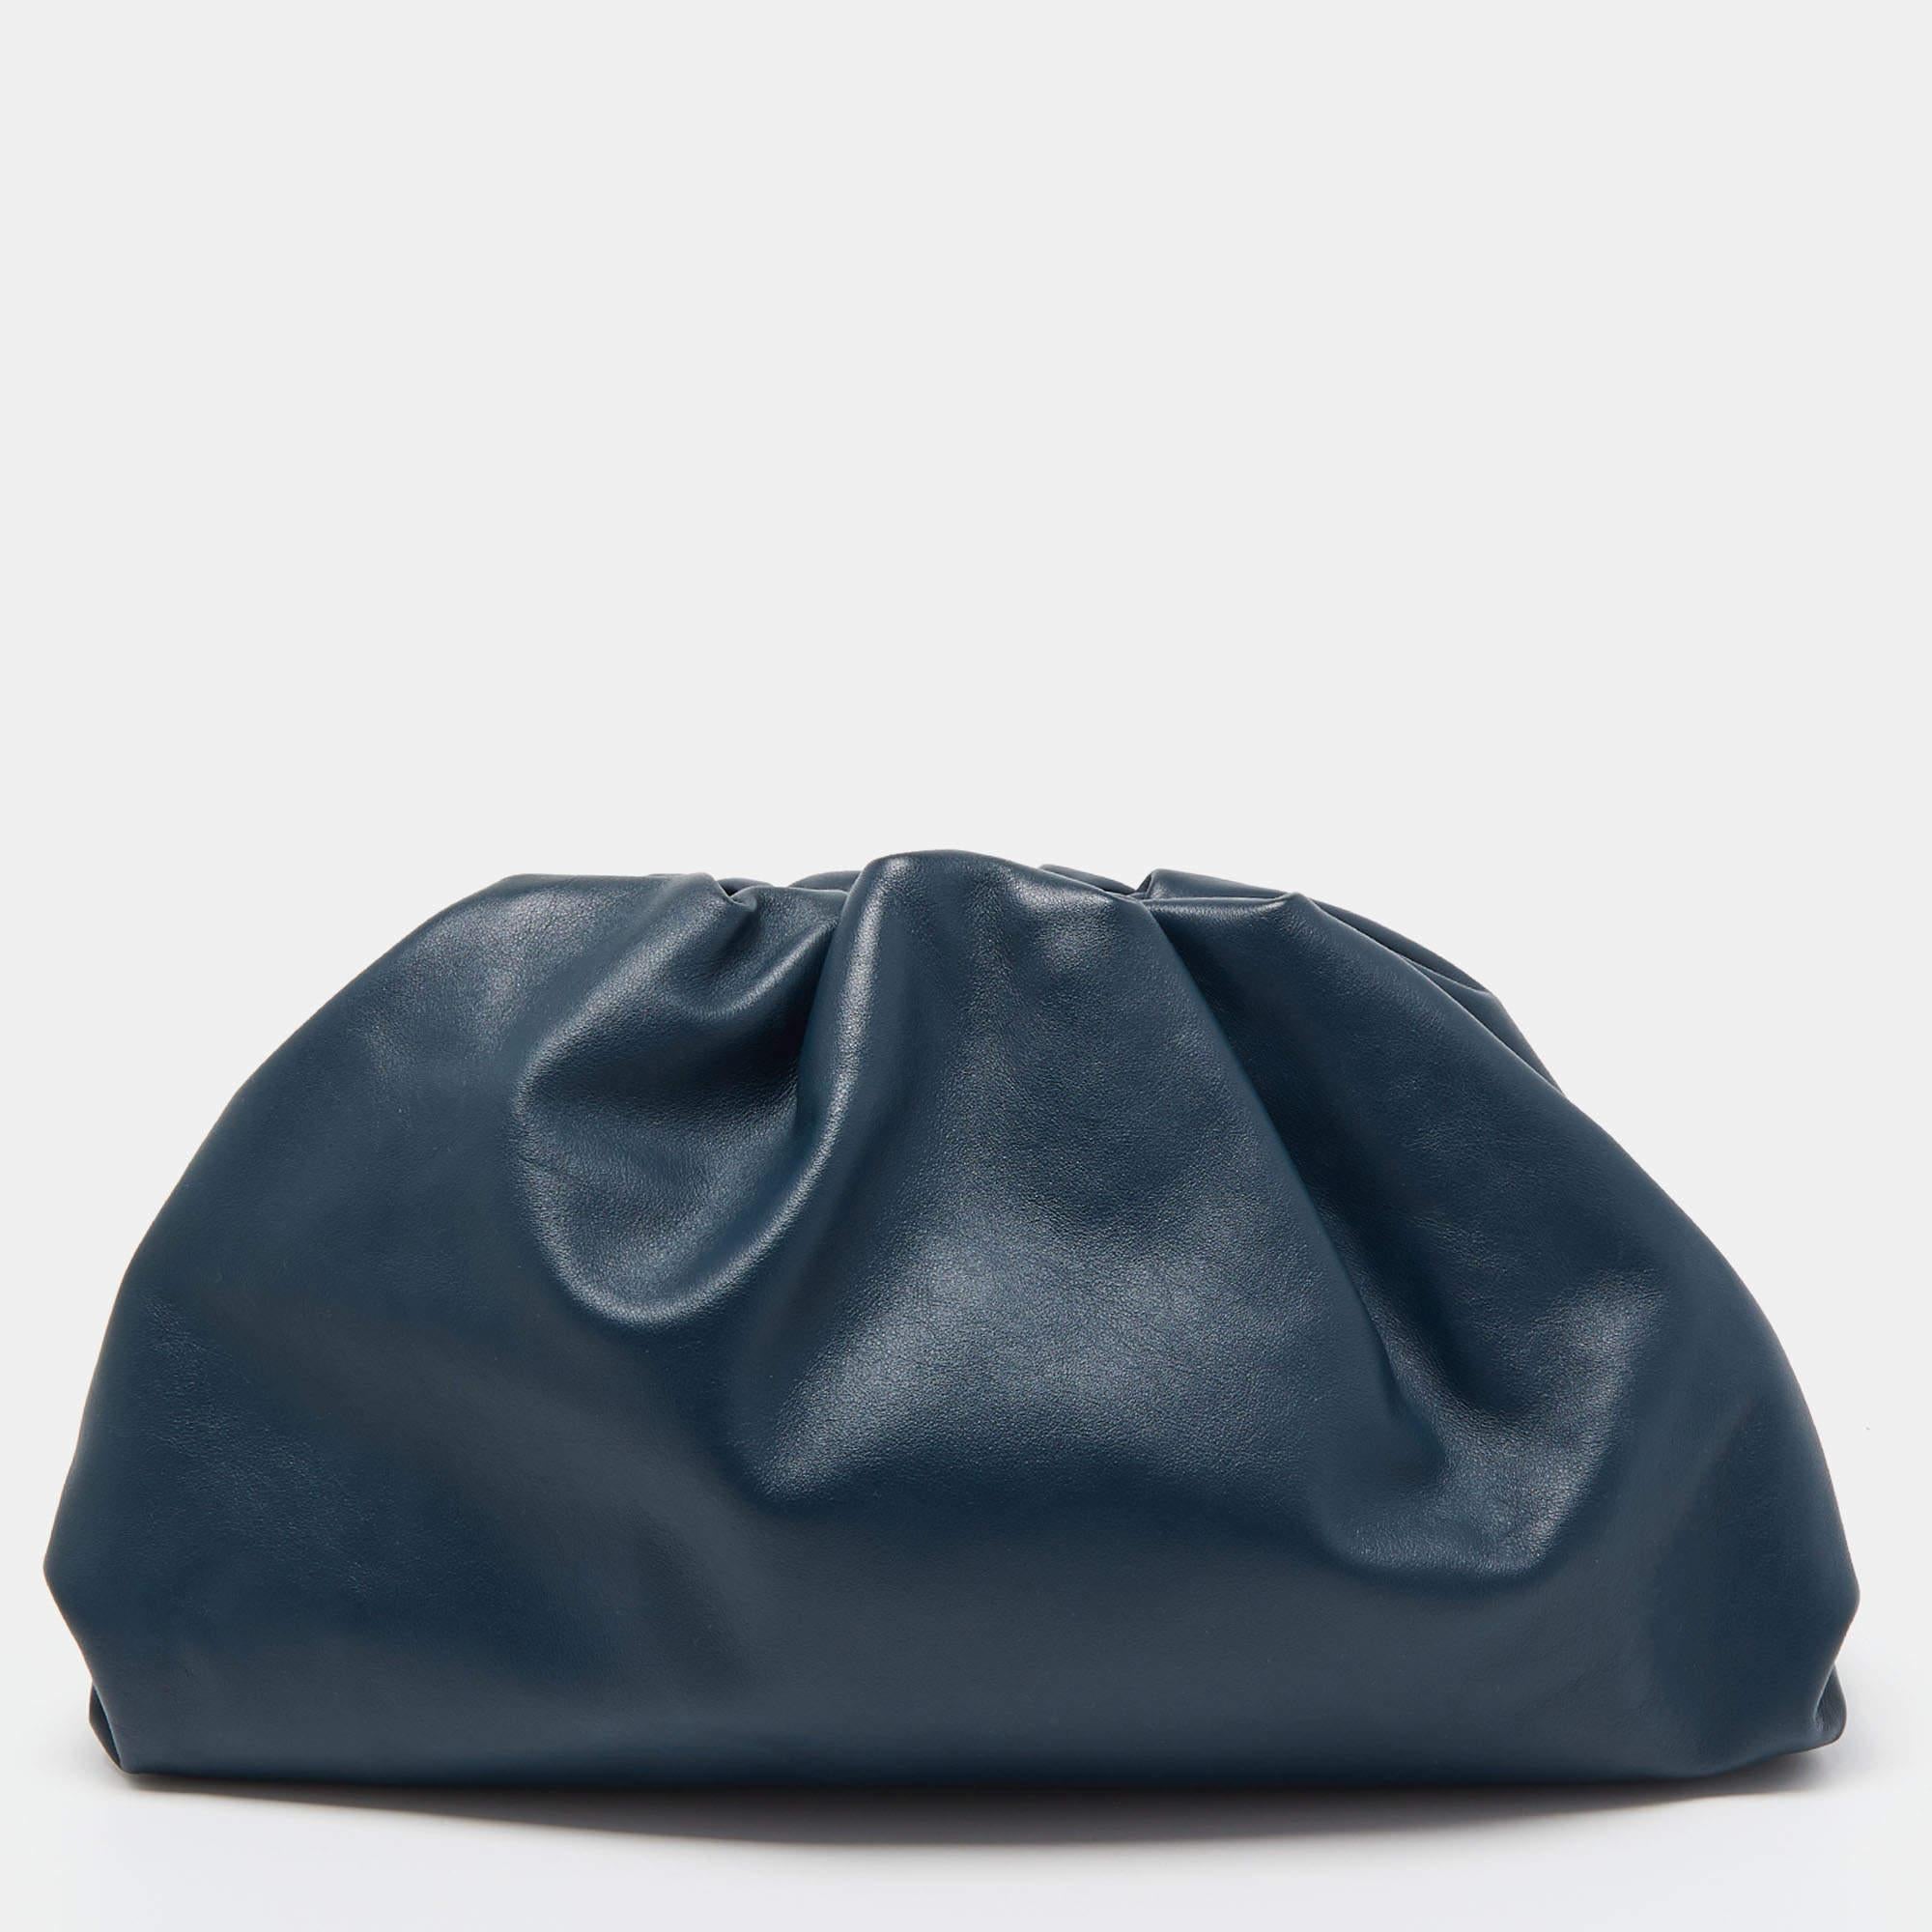 Die Tasche The Pouch von Bottega Veneta, die die Modewelt im Sturm eroberte, spiegelt den unverwechselbaren Stil des früheren Kreativdirektors Daniel Lee wider. Die Kreation aus der Frühjahrskollektion 2019 des Labels ist bei jedem anderen